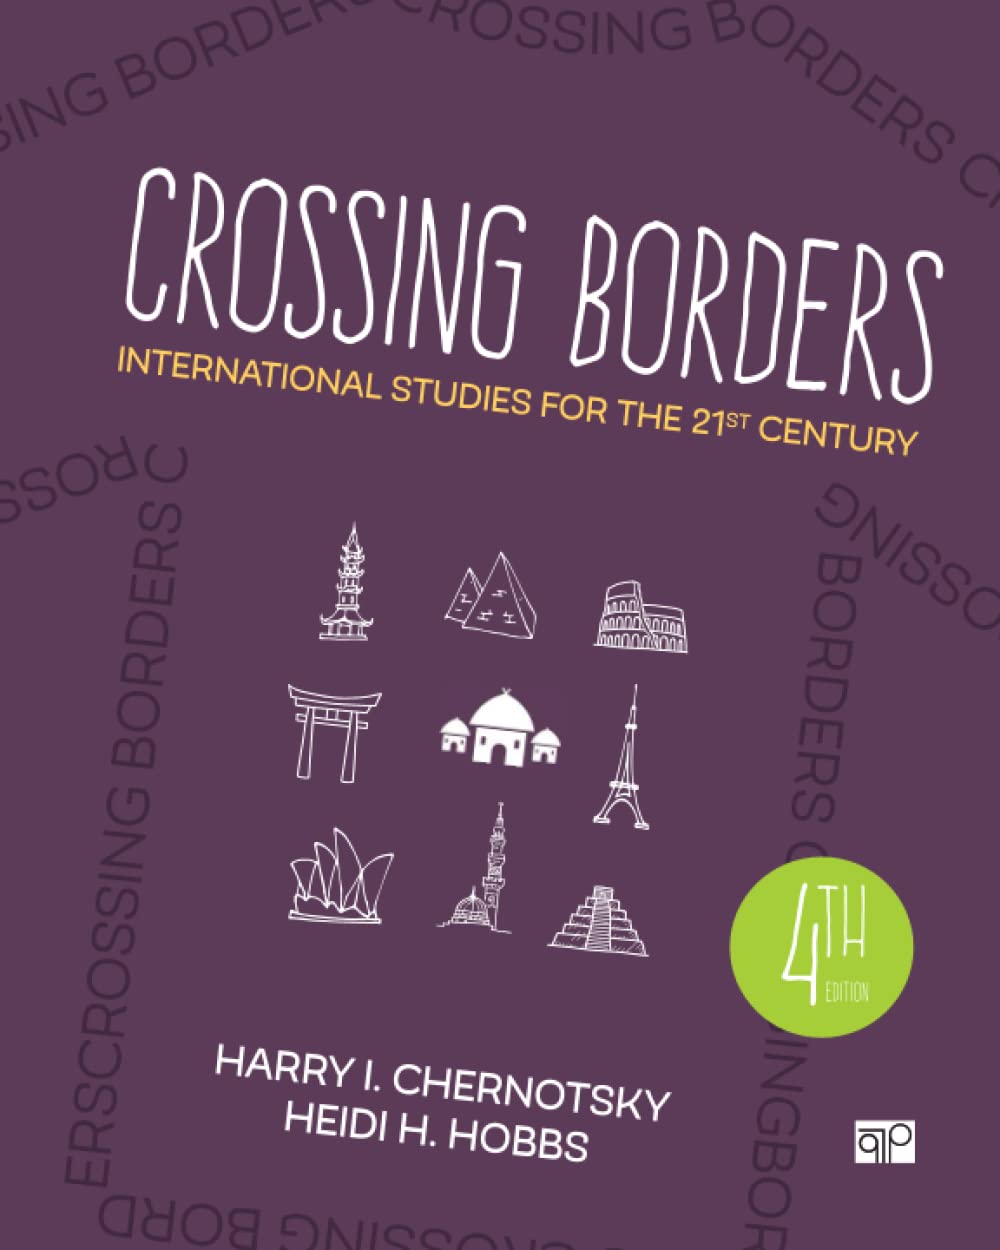 full test bank for Crossing Borders International Studies for the 21st Century, Chernotsky,4e